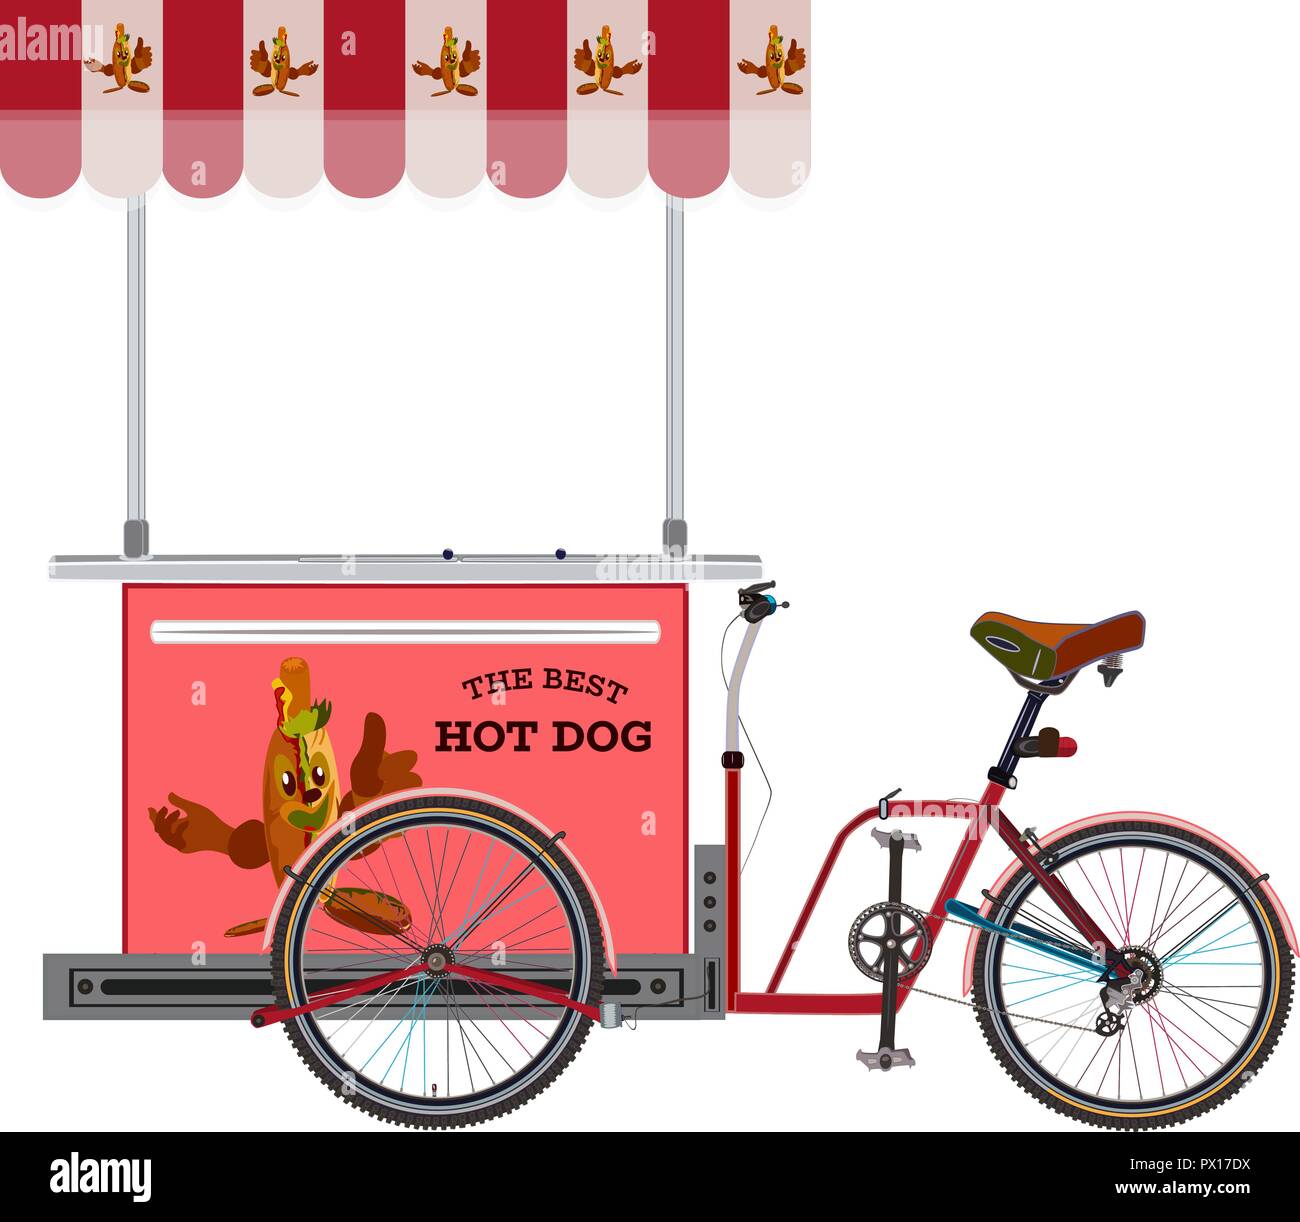 Hot Dog bike vettore illustrazione piana. Hot Dog carrello per street vending con salsiccia di cartone animato che mostra il pollice verso l'alto. Illustrazione Vettoriale